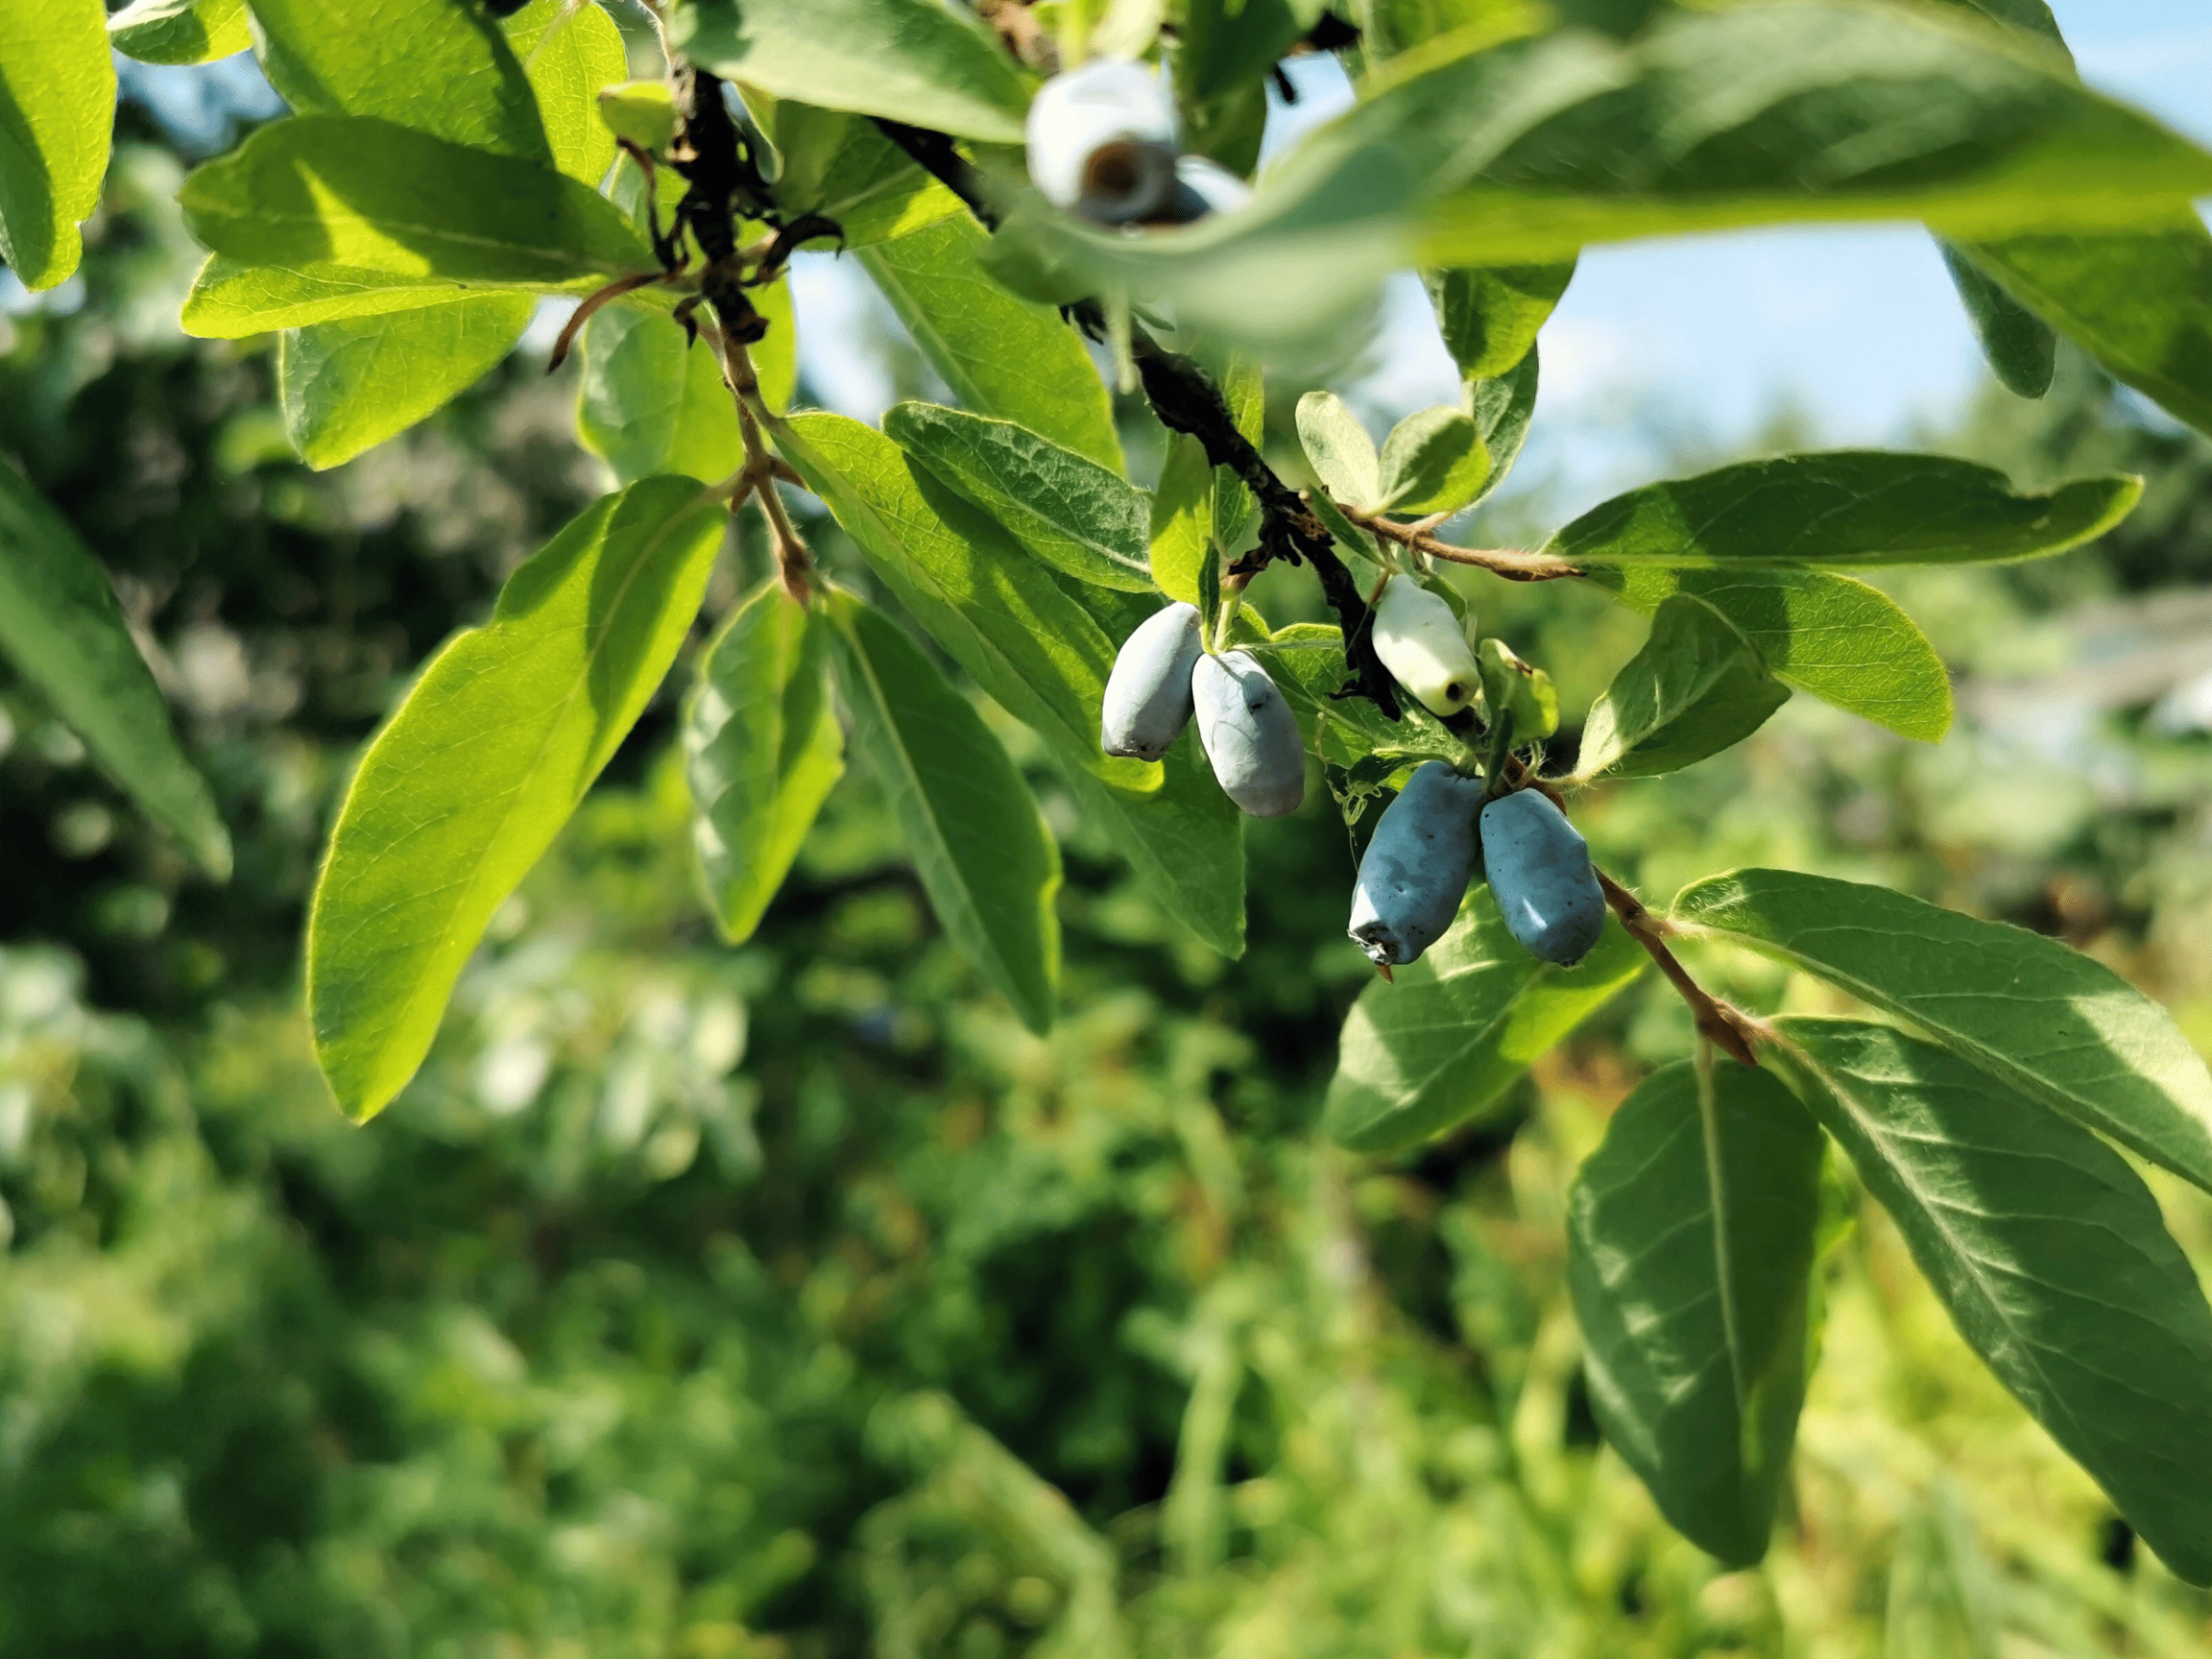 Haskap berries growing on the underside of a branch.